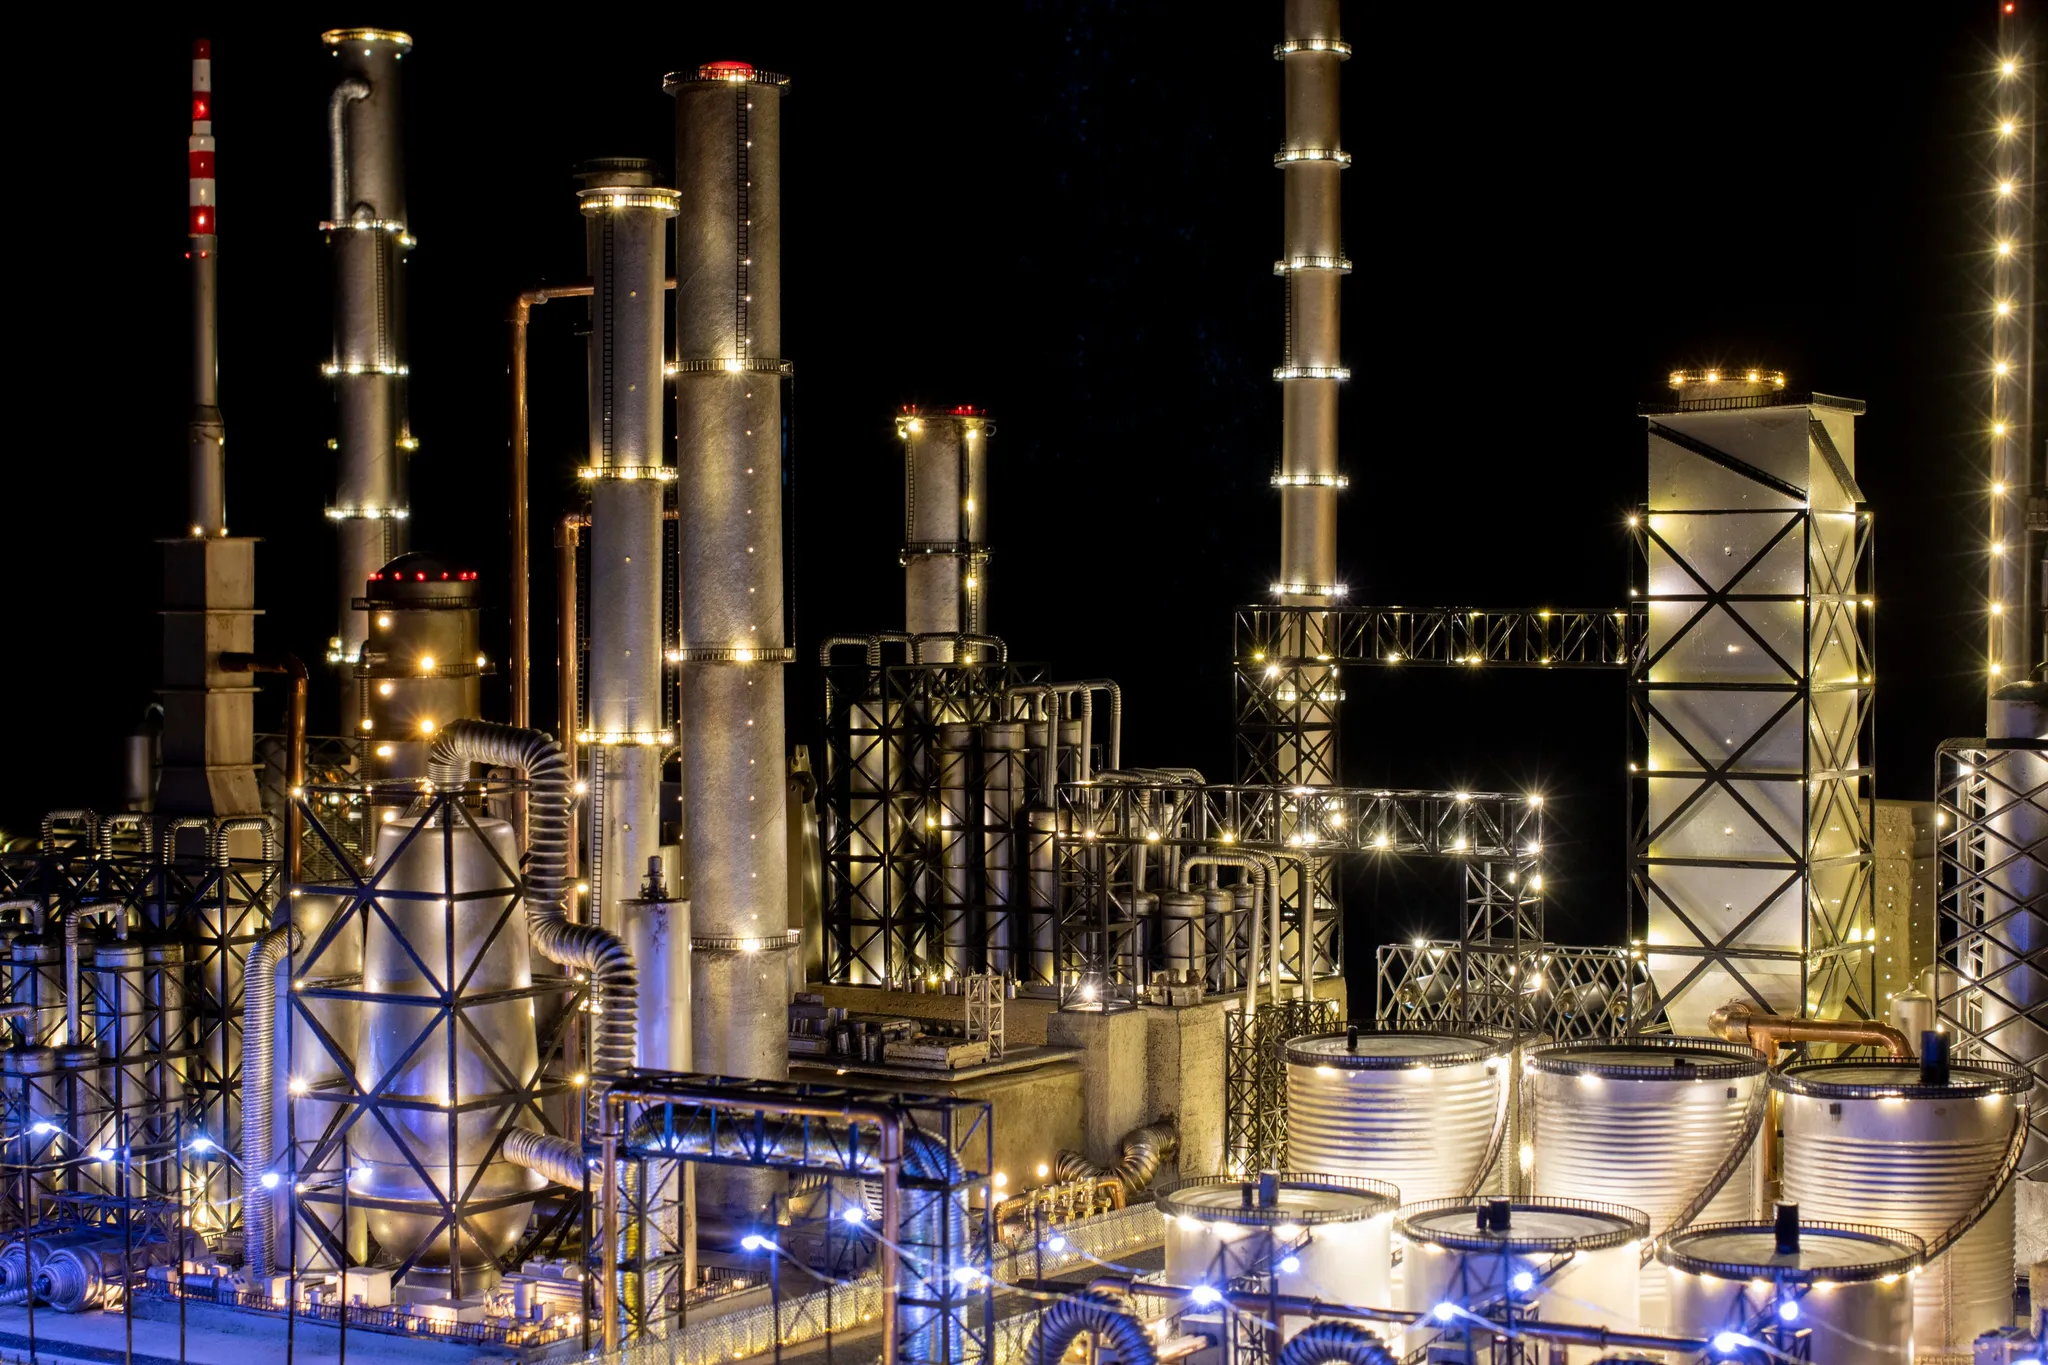 Een olieraffinaderij-industriegebied 's nachts, met helder verlichte witte torens en cilinders in wit en blauw licht.